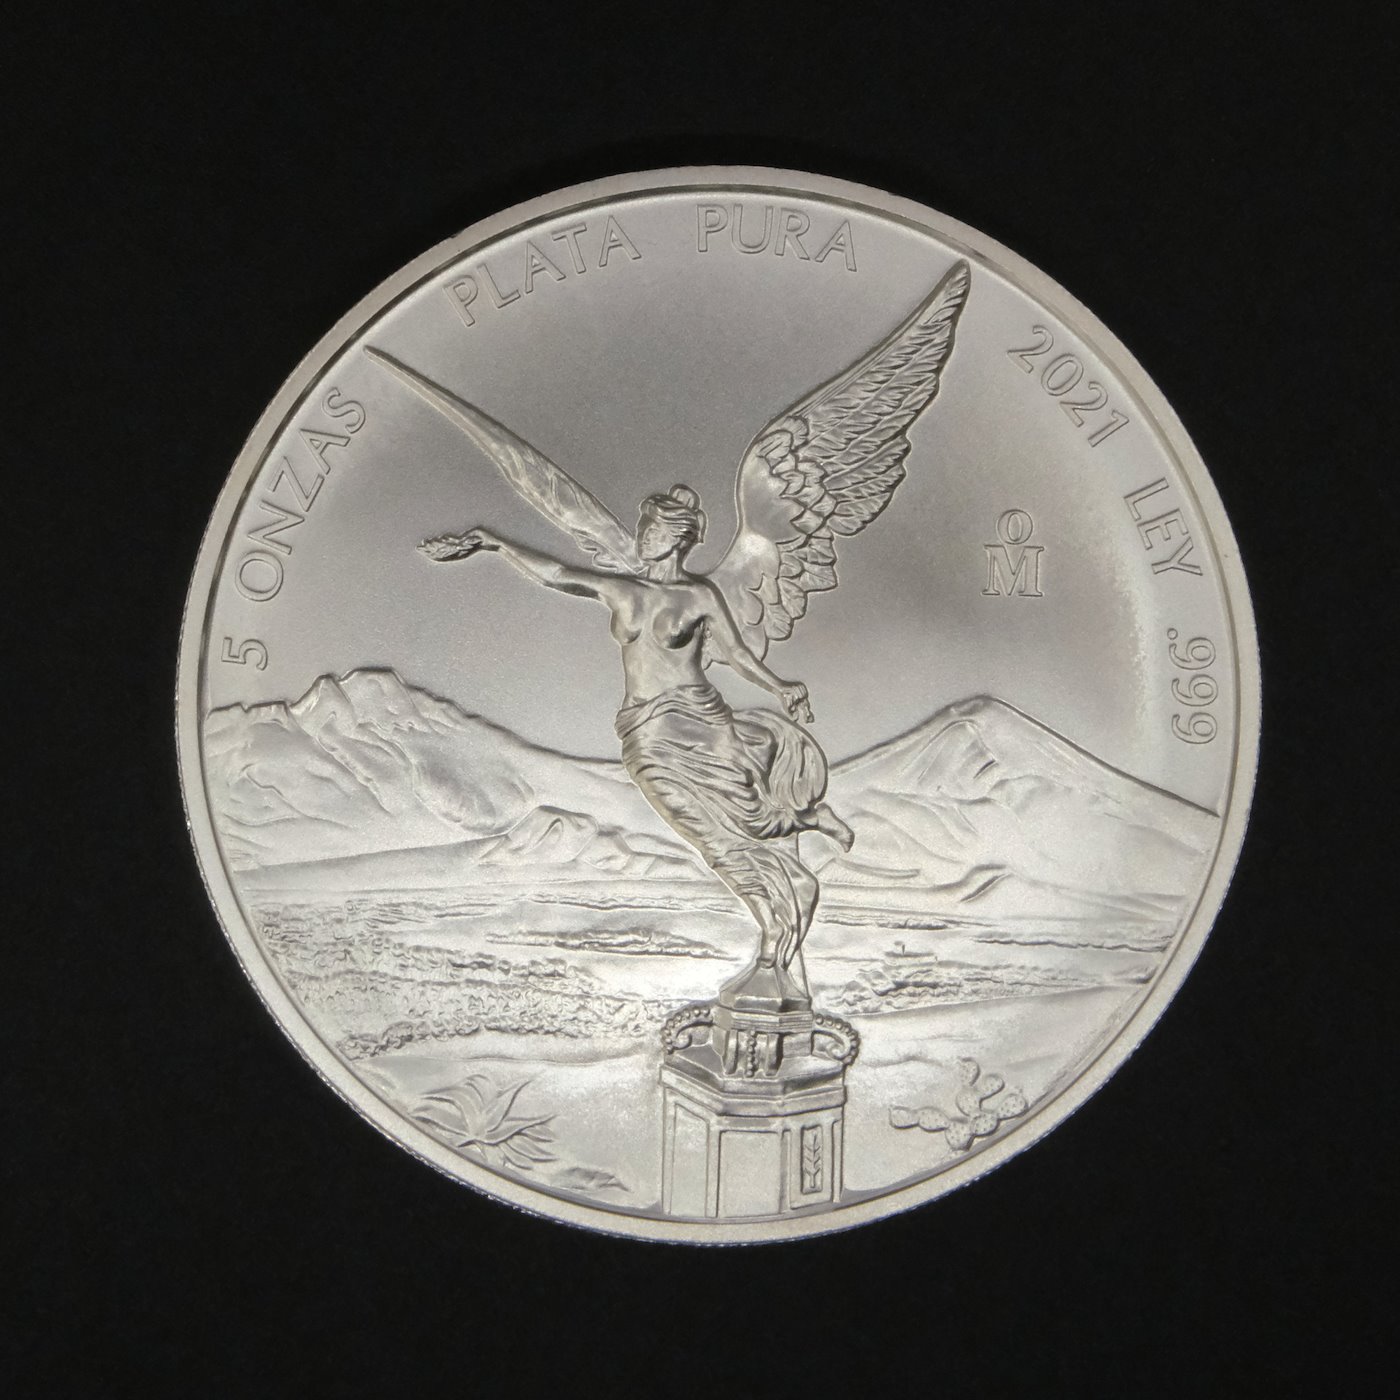 Mince - Stříbrná 5 uncová mince MEXICO 2021, stříbro 999/1000, hrubá hmotnost 155,75g